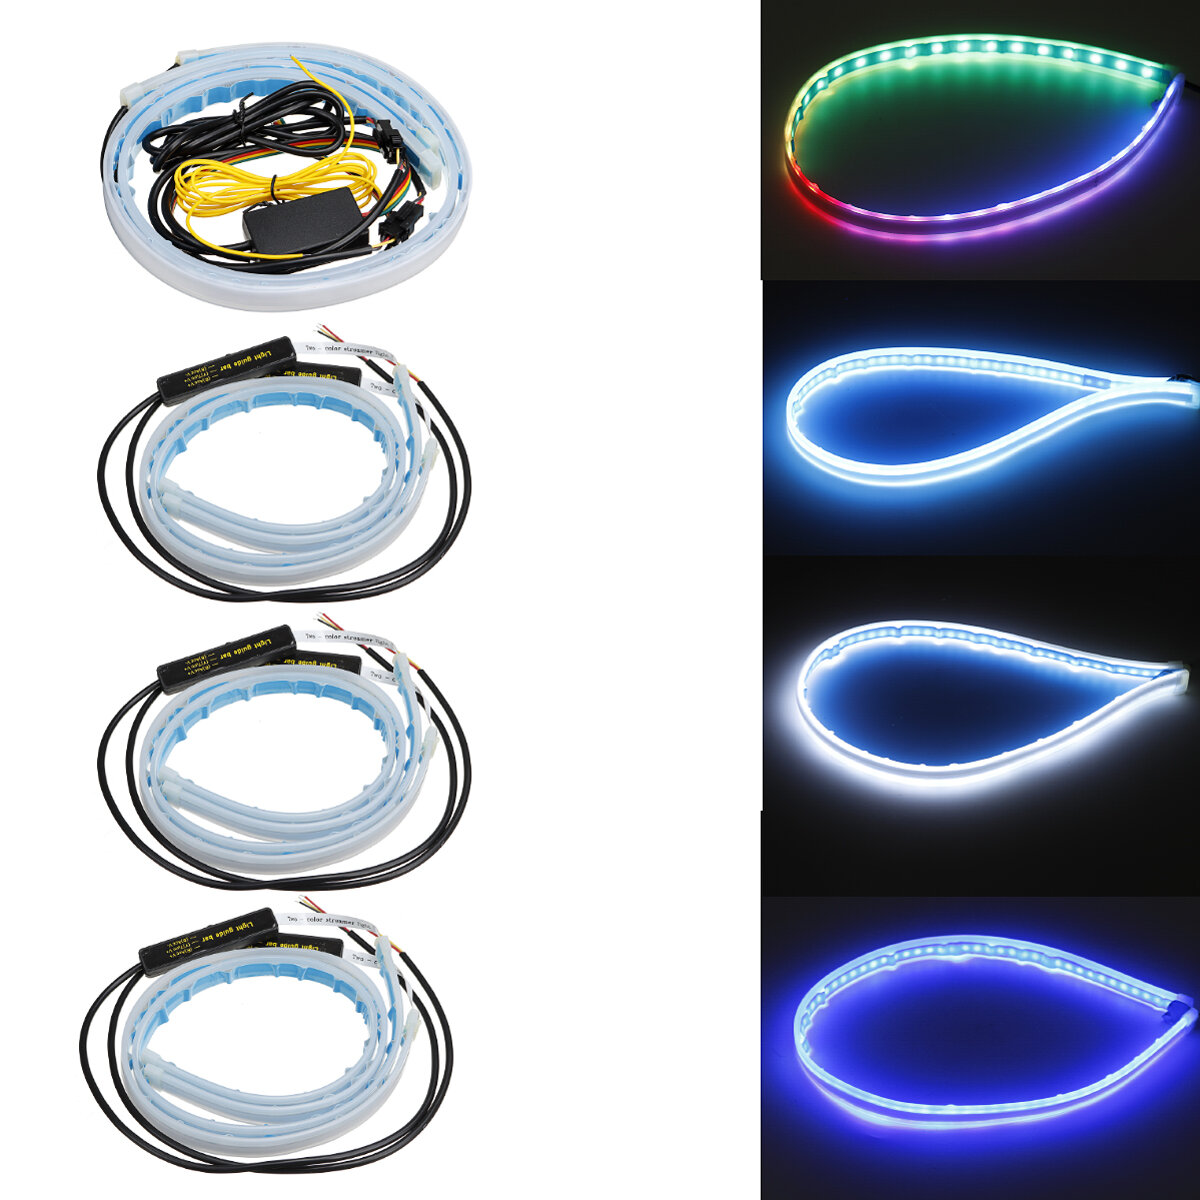 2 STUKS 60 cm Auto LED Lichtgeleider Strip Ultradunne Dagrijverlichting Stromend Water Riem Draaien 